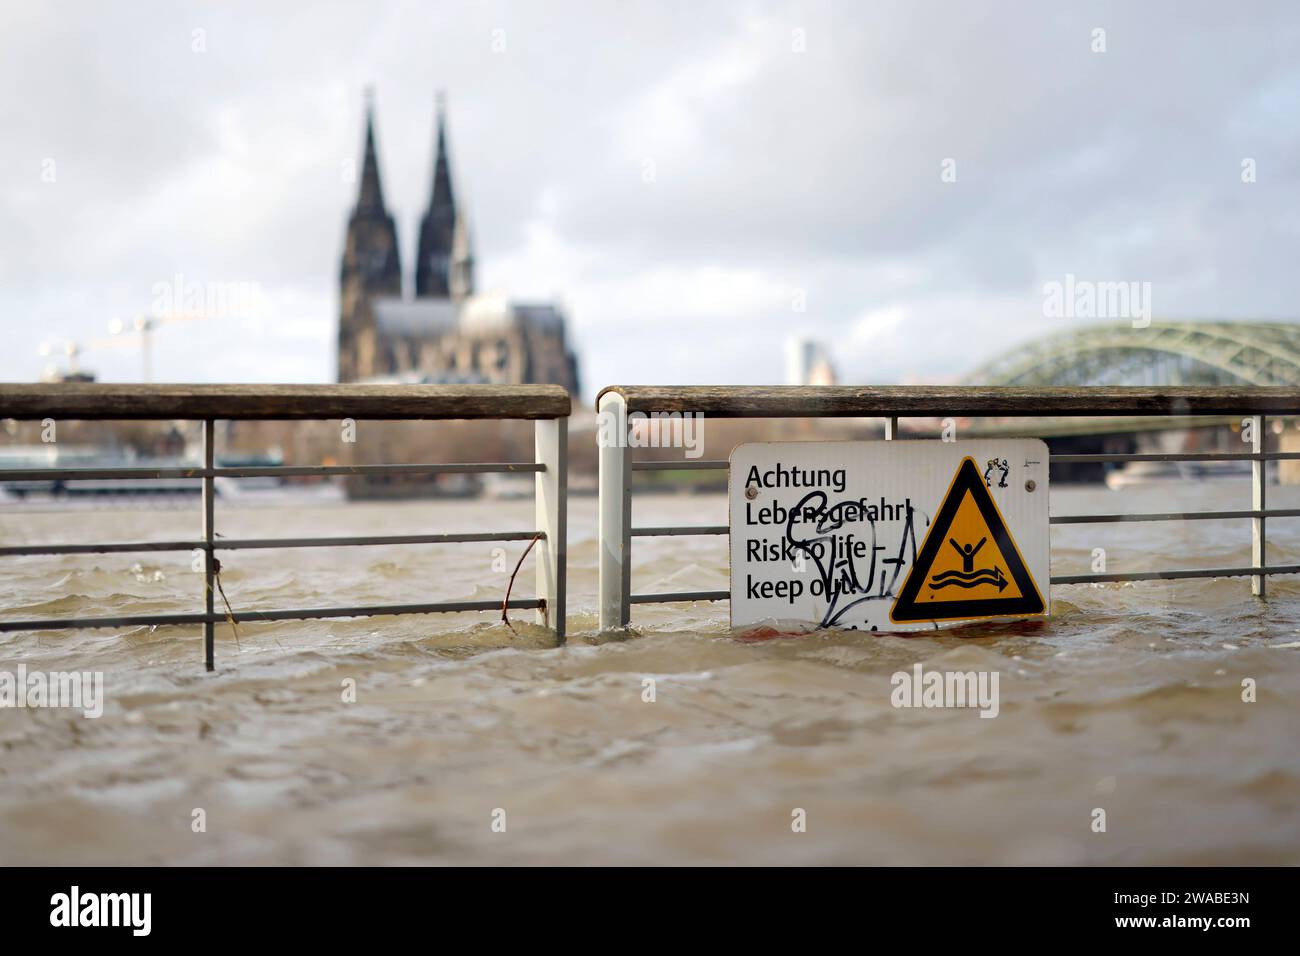 Impression vom Hochwasser in Köln am Ufer von Köln-Deutz: Am Ufer des Rhein sind Teile des Rheinboulevard, Gehwege und Wiesen überflutet. Absperrungen weisen auf Lebensgefahr bei Hochwasser Hin. DAS nasse Wetter Hat die Pegel von Bächen und Flüssen steigen lassen. Böden sind aufgeweicht und können kein weiteres Wasser fassen. für die kommenden Tage wird Dauerregen befürchtet. Themenbild, Symbolbild Köln, 03.01.2023 NRW Deutschland *** impressione delle inondazioni a Colonia sulle rive di Colonia Deutz sulle rive del Reno, parti del RheinBoulevard, sentieri e prati sono allagati Bar Foto Stock